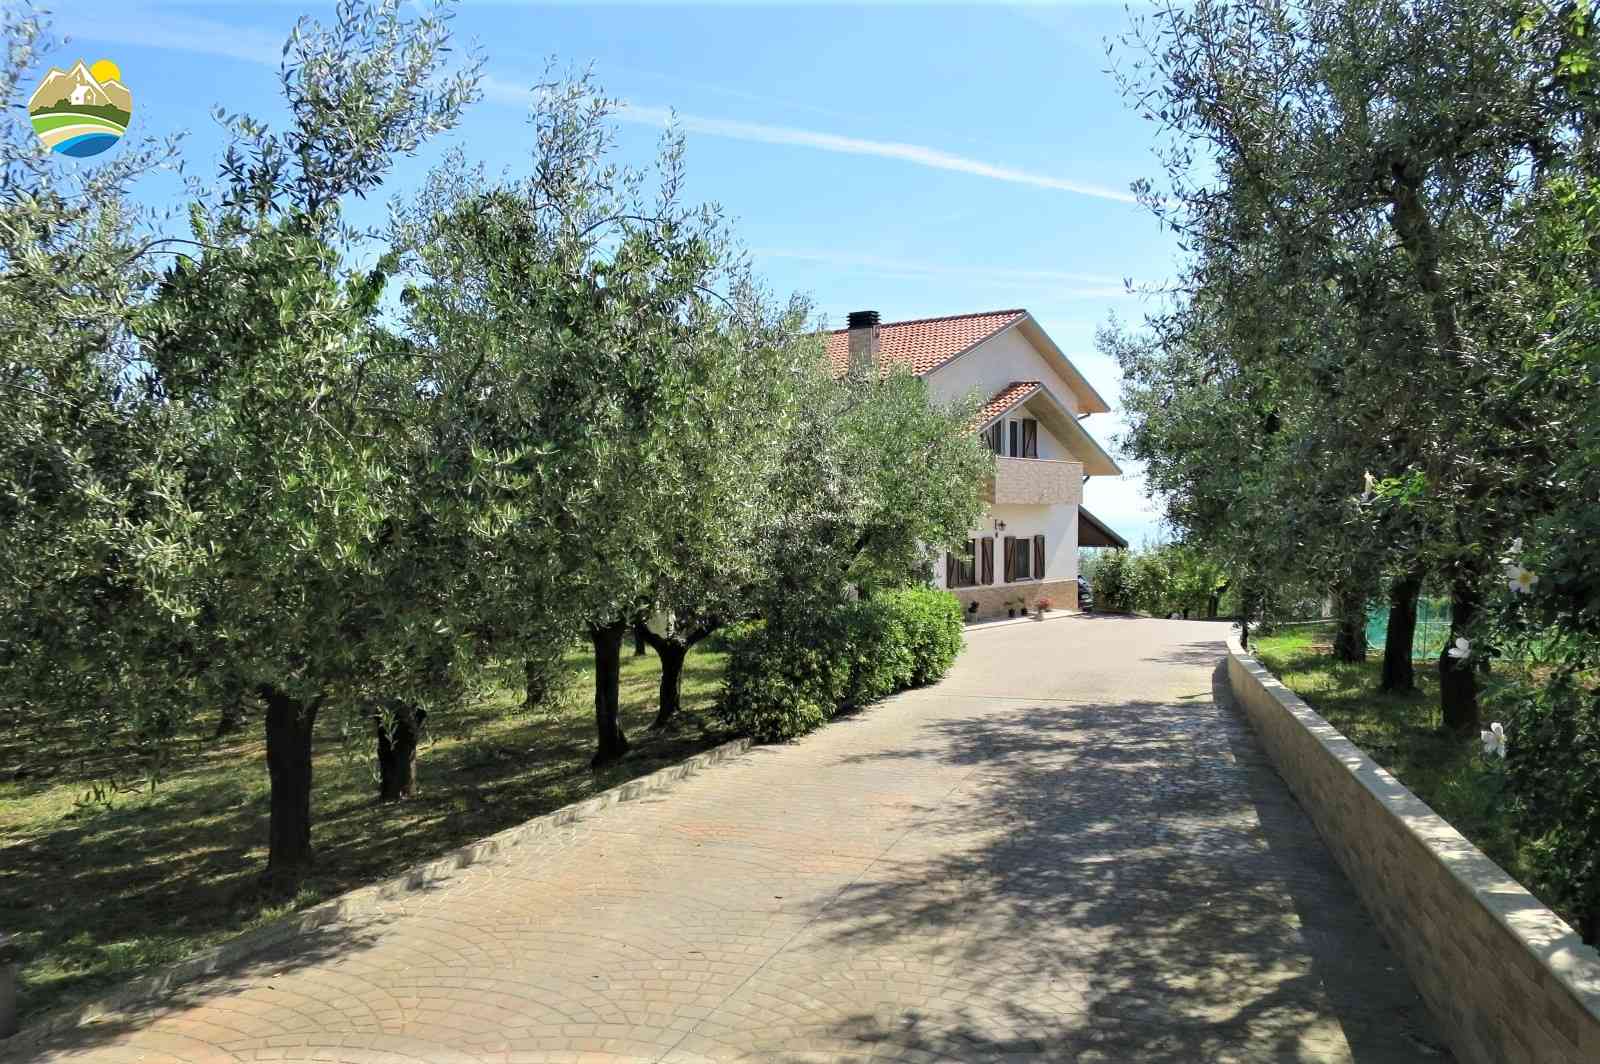 Villa Villa for sale Pineto (TE), Villa Miramare - Pineto - EUR 543.189 830